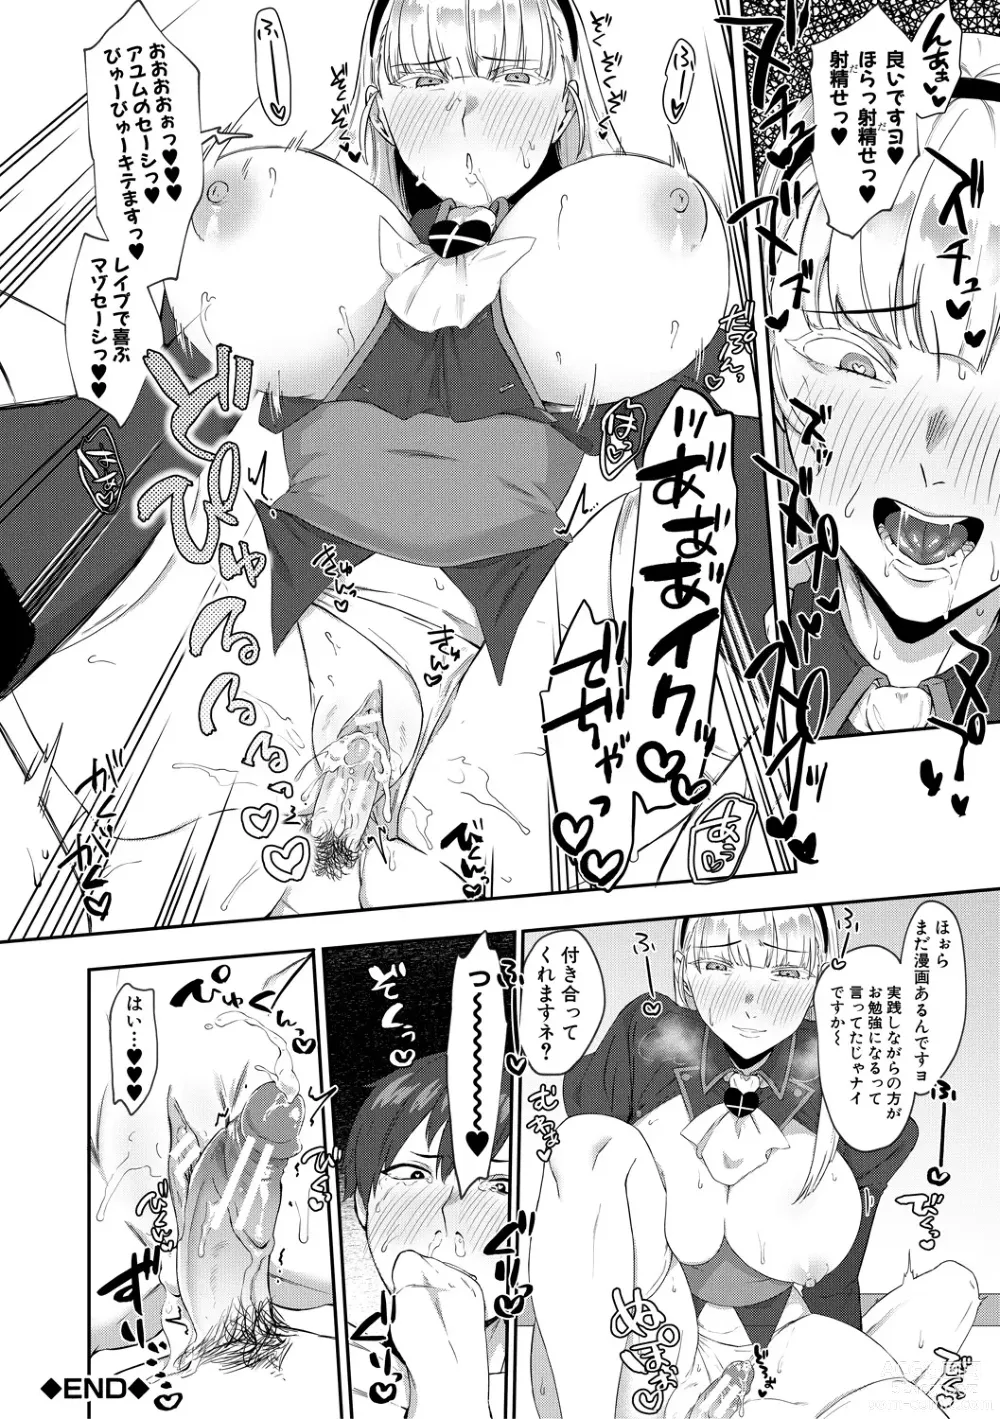 Page 192 of manga Naburare  Orgasm